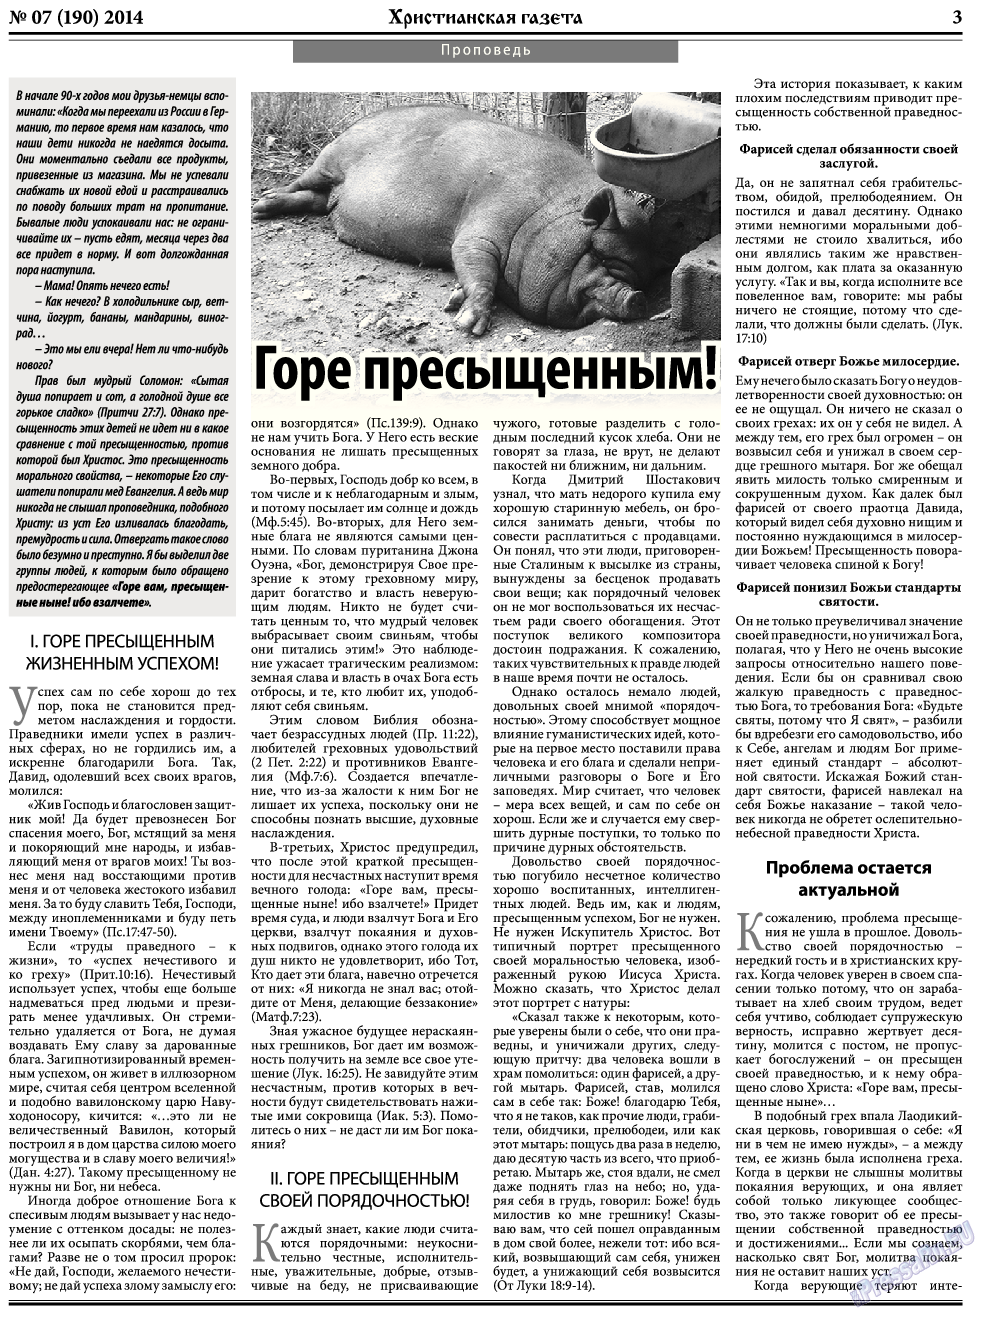 Христианская газета, газета. 2014 №7 стр.3